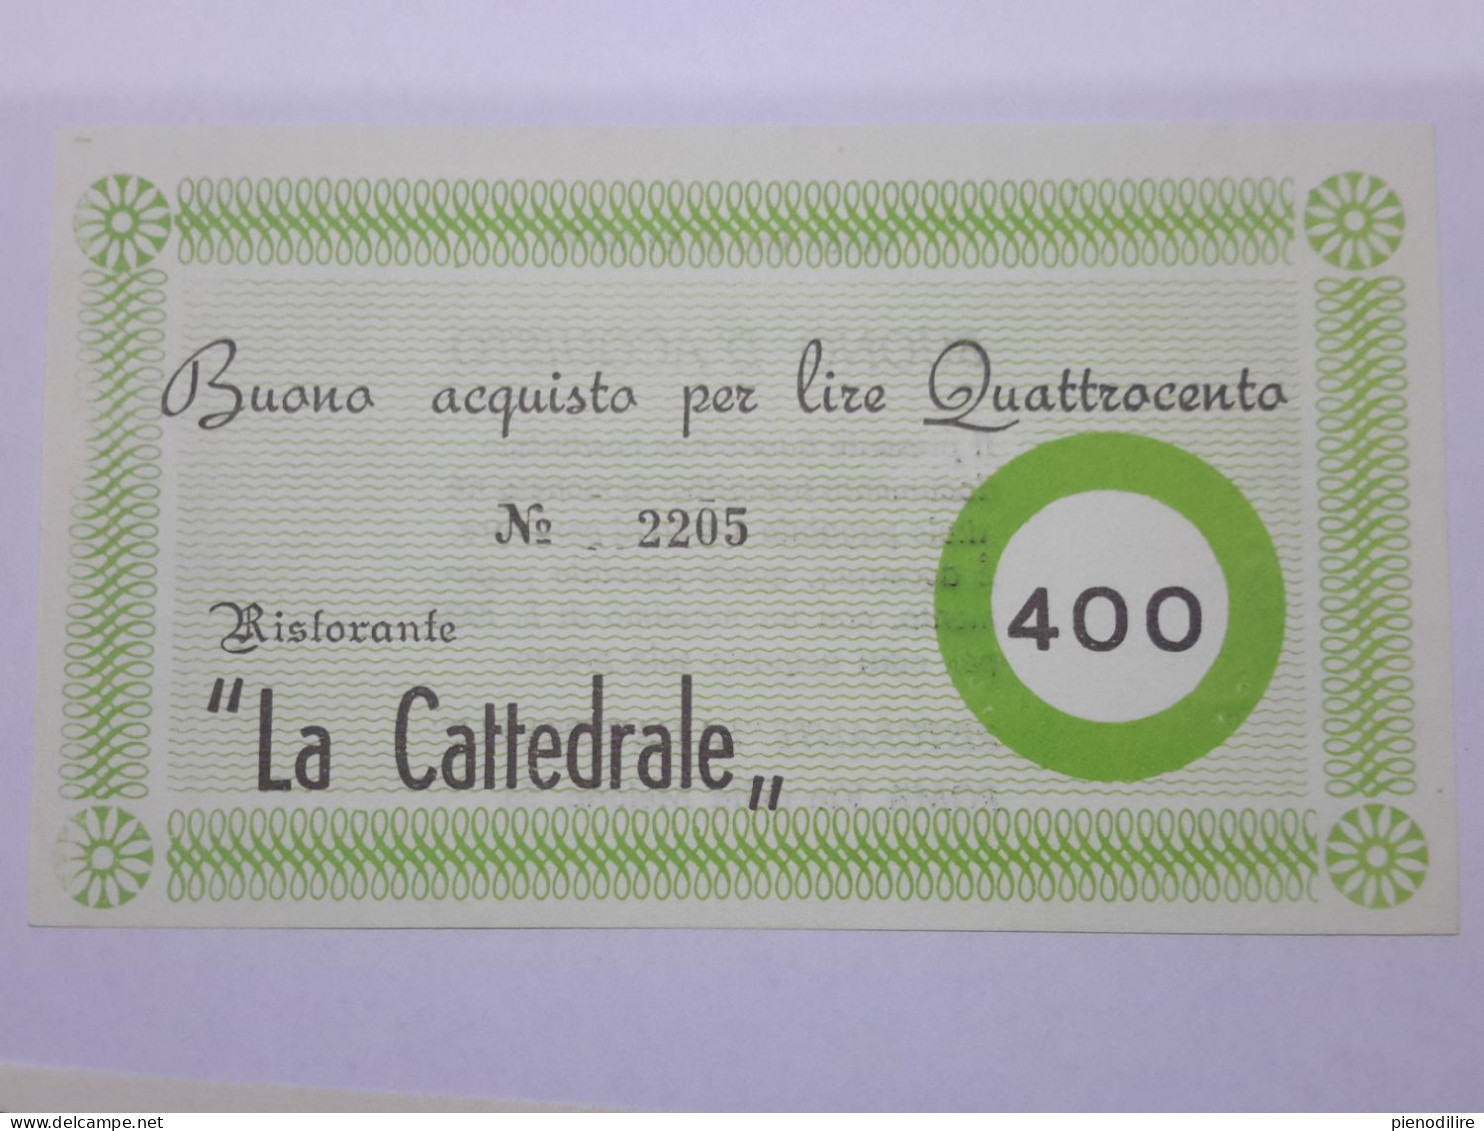 LOTTO 4Pz. 100 200 300 400 LIRE BUONI ACQUISTO RISTORANTE LA CATTEDRALE ROMA VALIDO FINO AL 31.12.1976 (A.4) - [10] Chèques